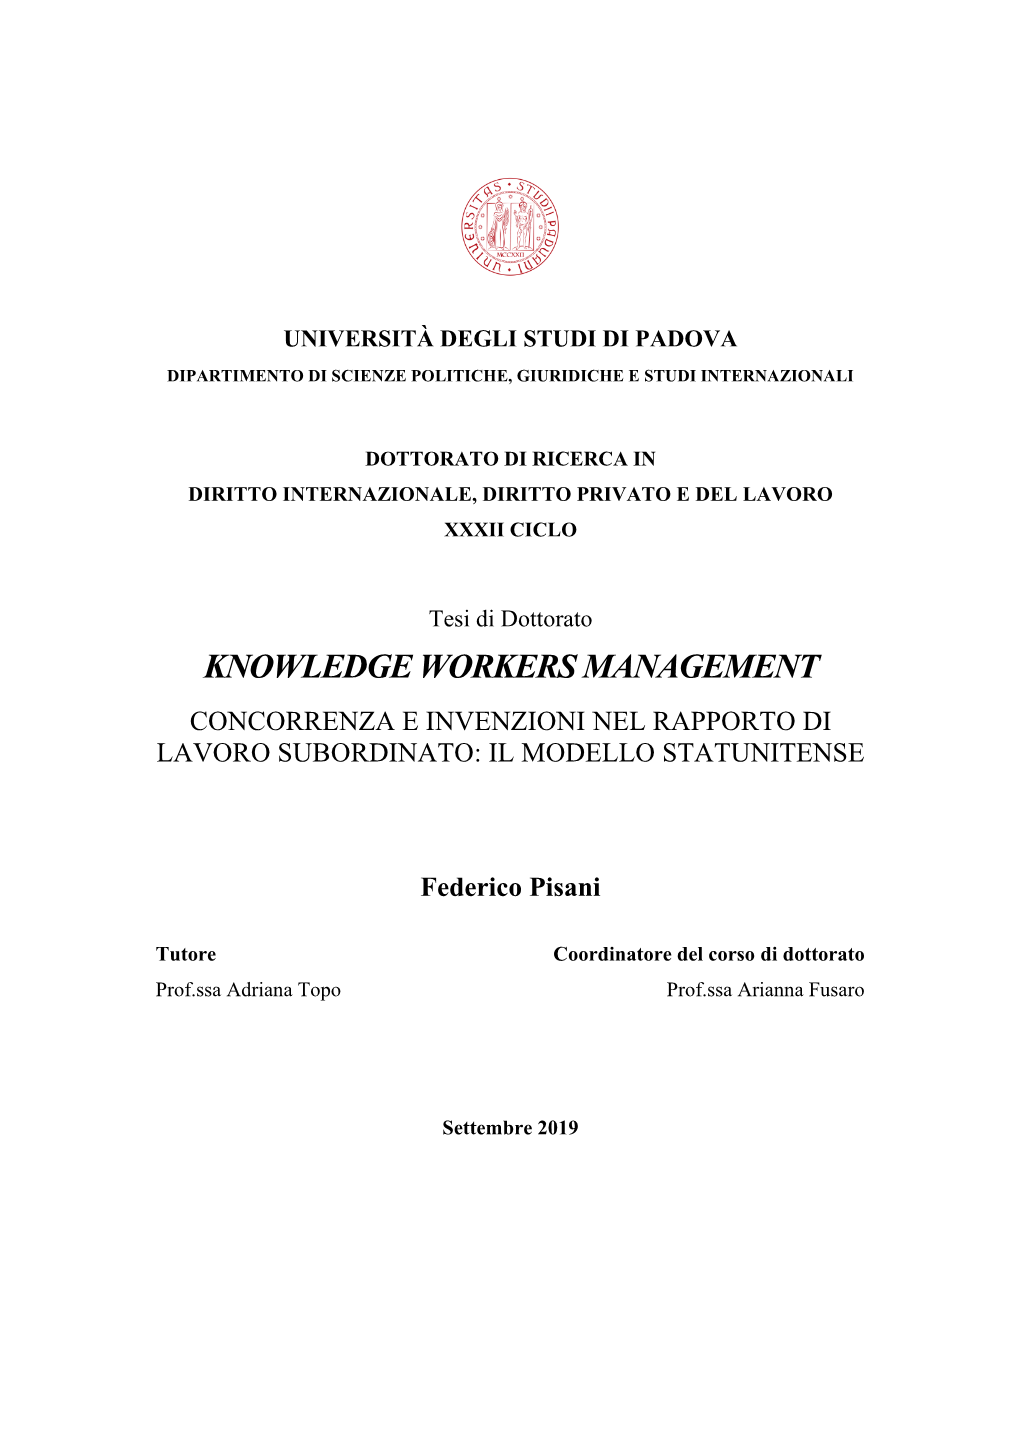 Knowledge Workers Management Concorrenza E Invenzioni Nel Rapporto Di Lavoro Subordinato: Il Modello Statunitense